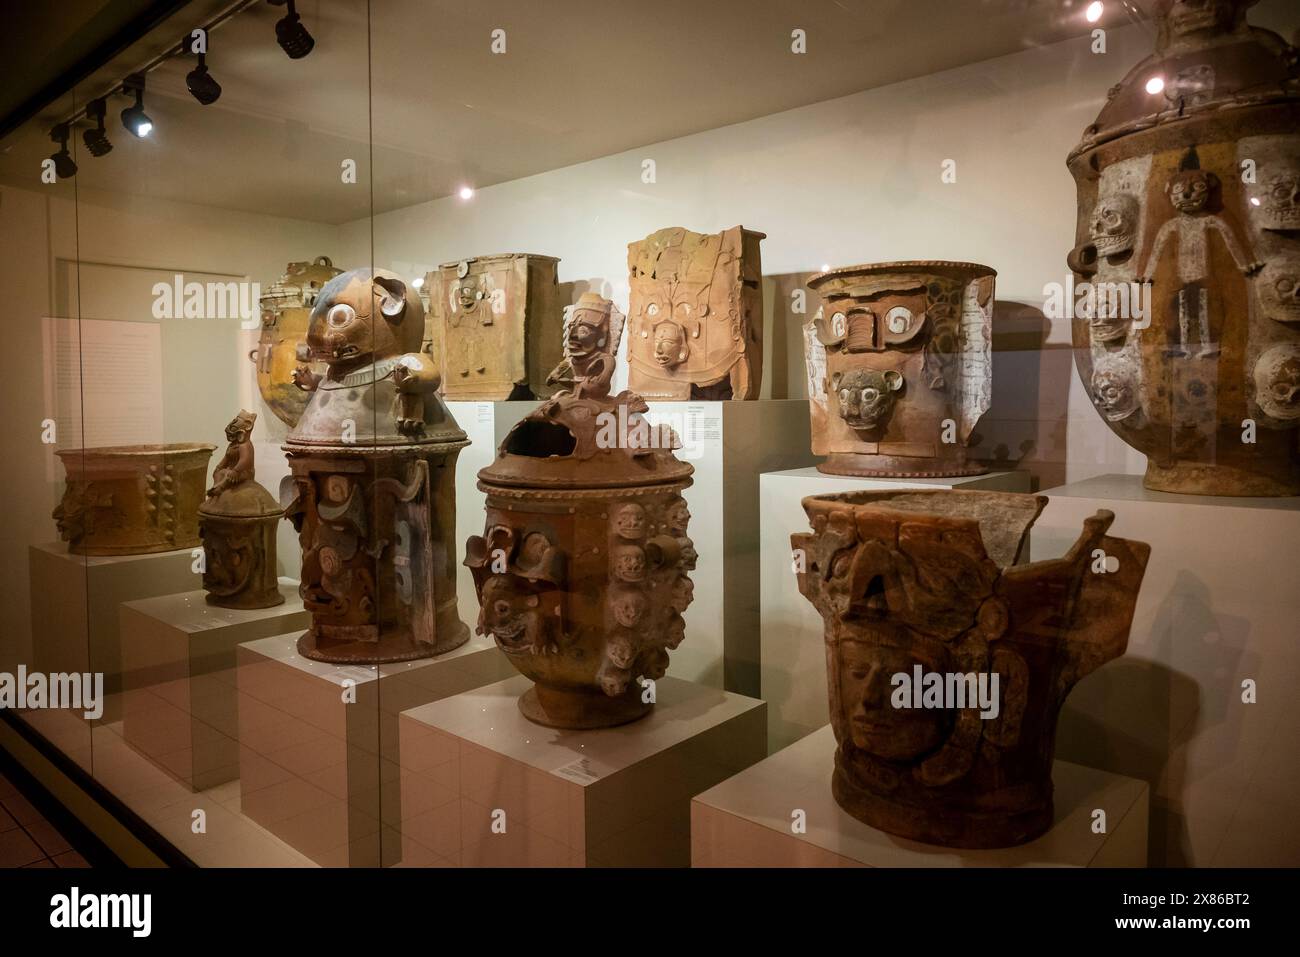 Museo Popol Vuh, sede di una delle più importanti collezioni di arte Maya e pre-colombiana del mondo, città del Guatemala, Guatemala Foto Stock